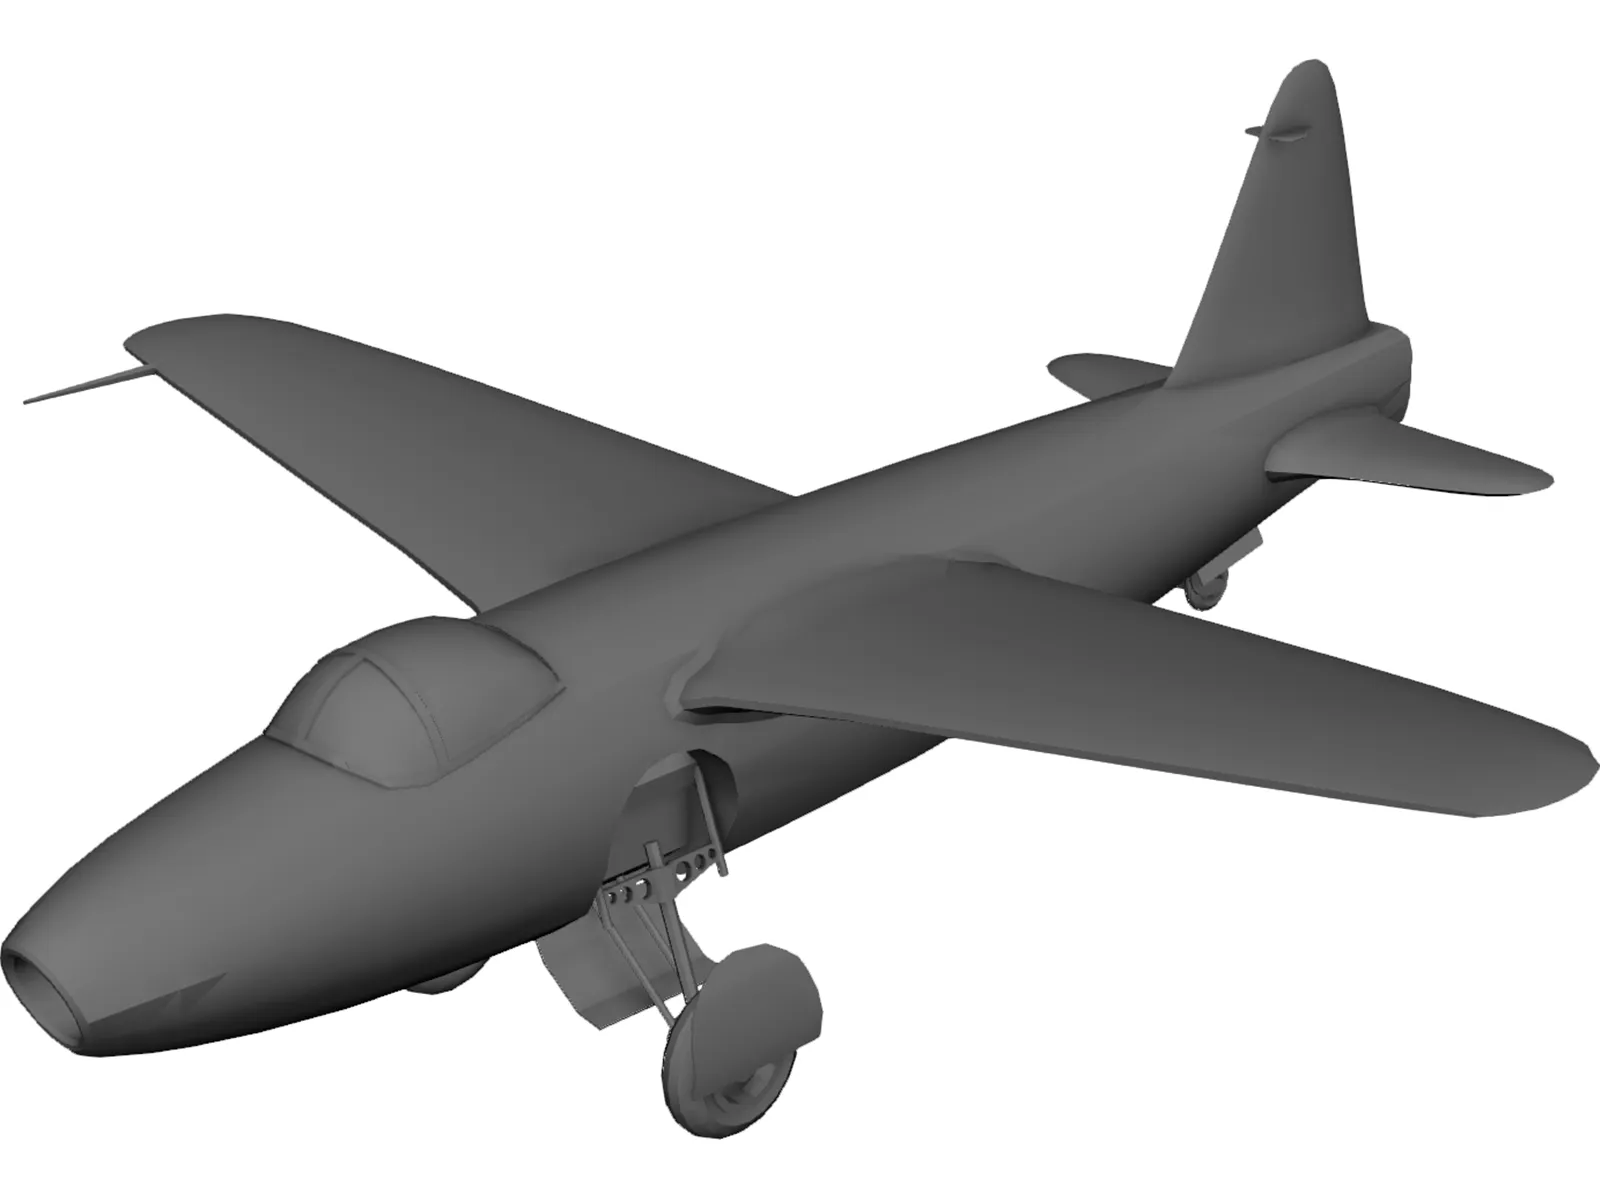 Heinkel He 178 3D Model